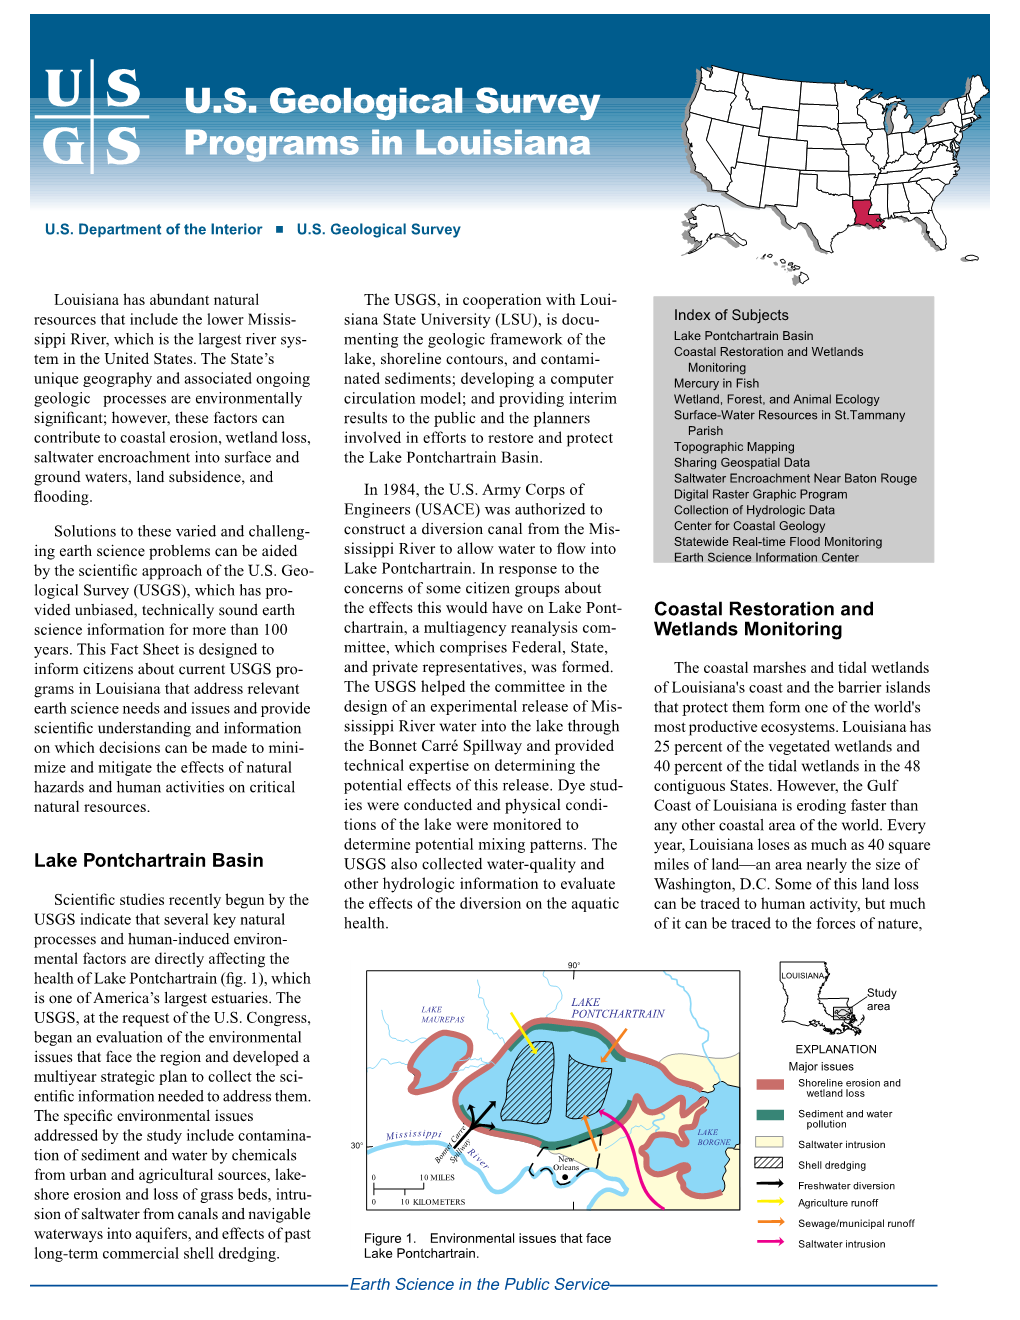 U.S. Geological Survey Programs in Louisiana